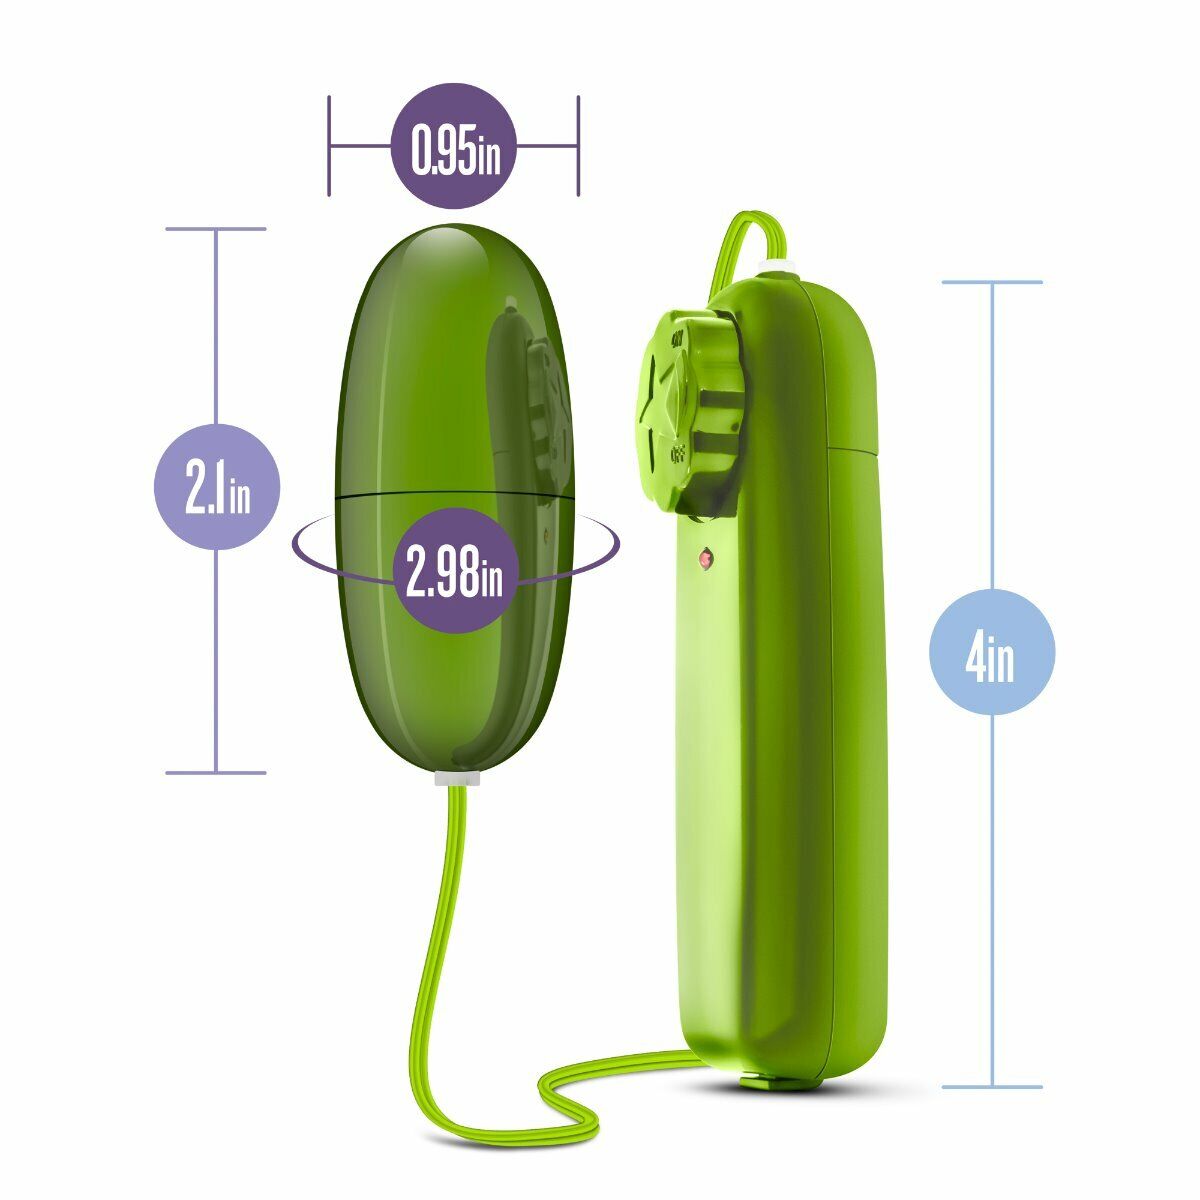 Lime Green Multi-speed Vibrating Bullet Egg Vibrator Beginner Sex Toys for Women